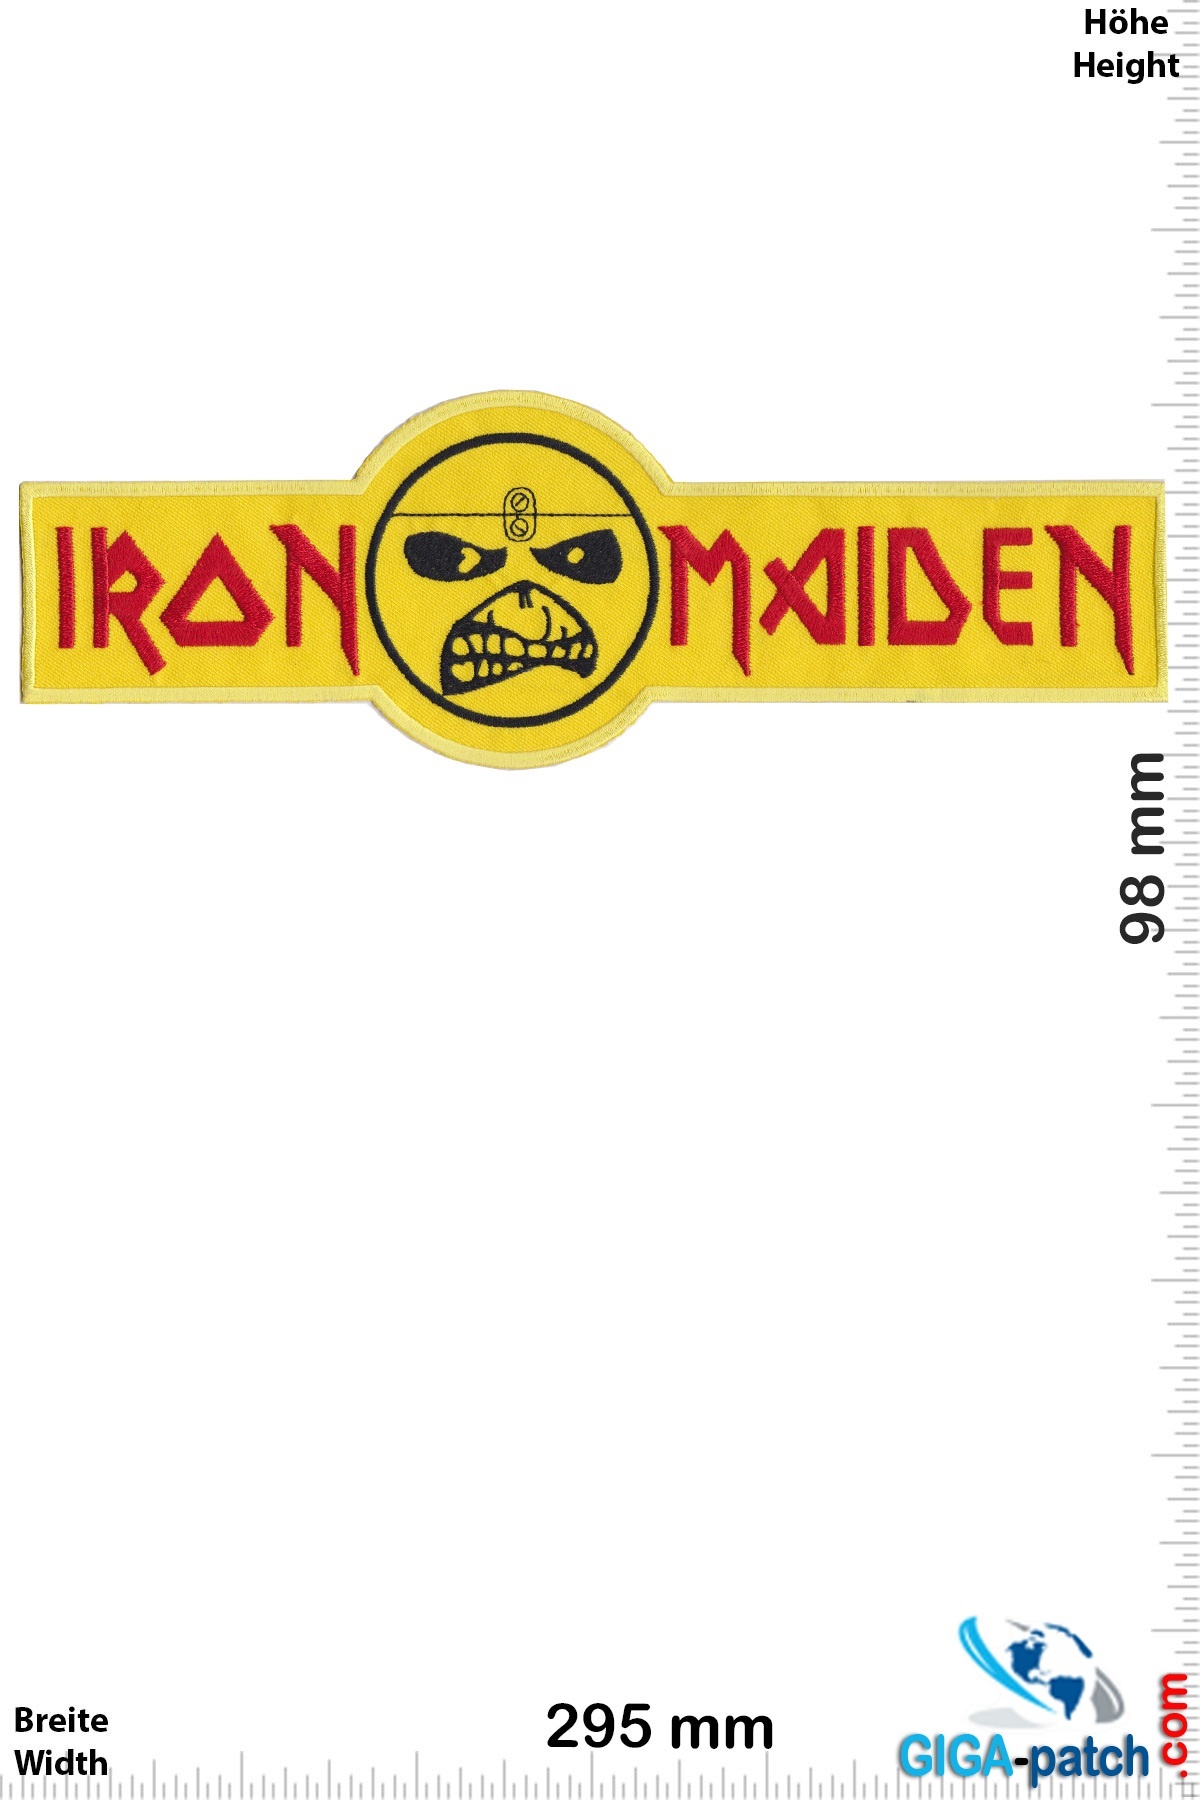 Iron Maiden Iron Maiden - Eddy Yellow  - 29 cm